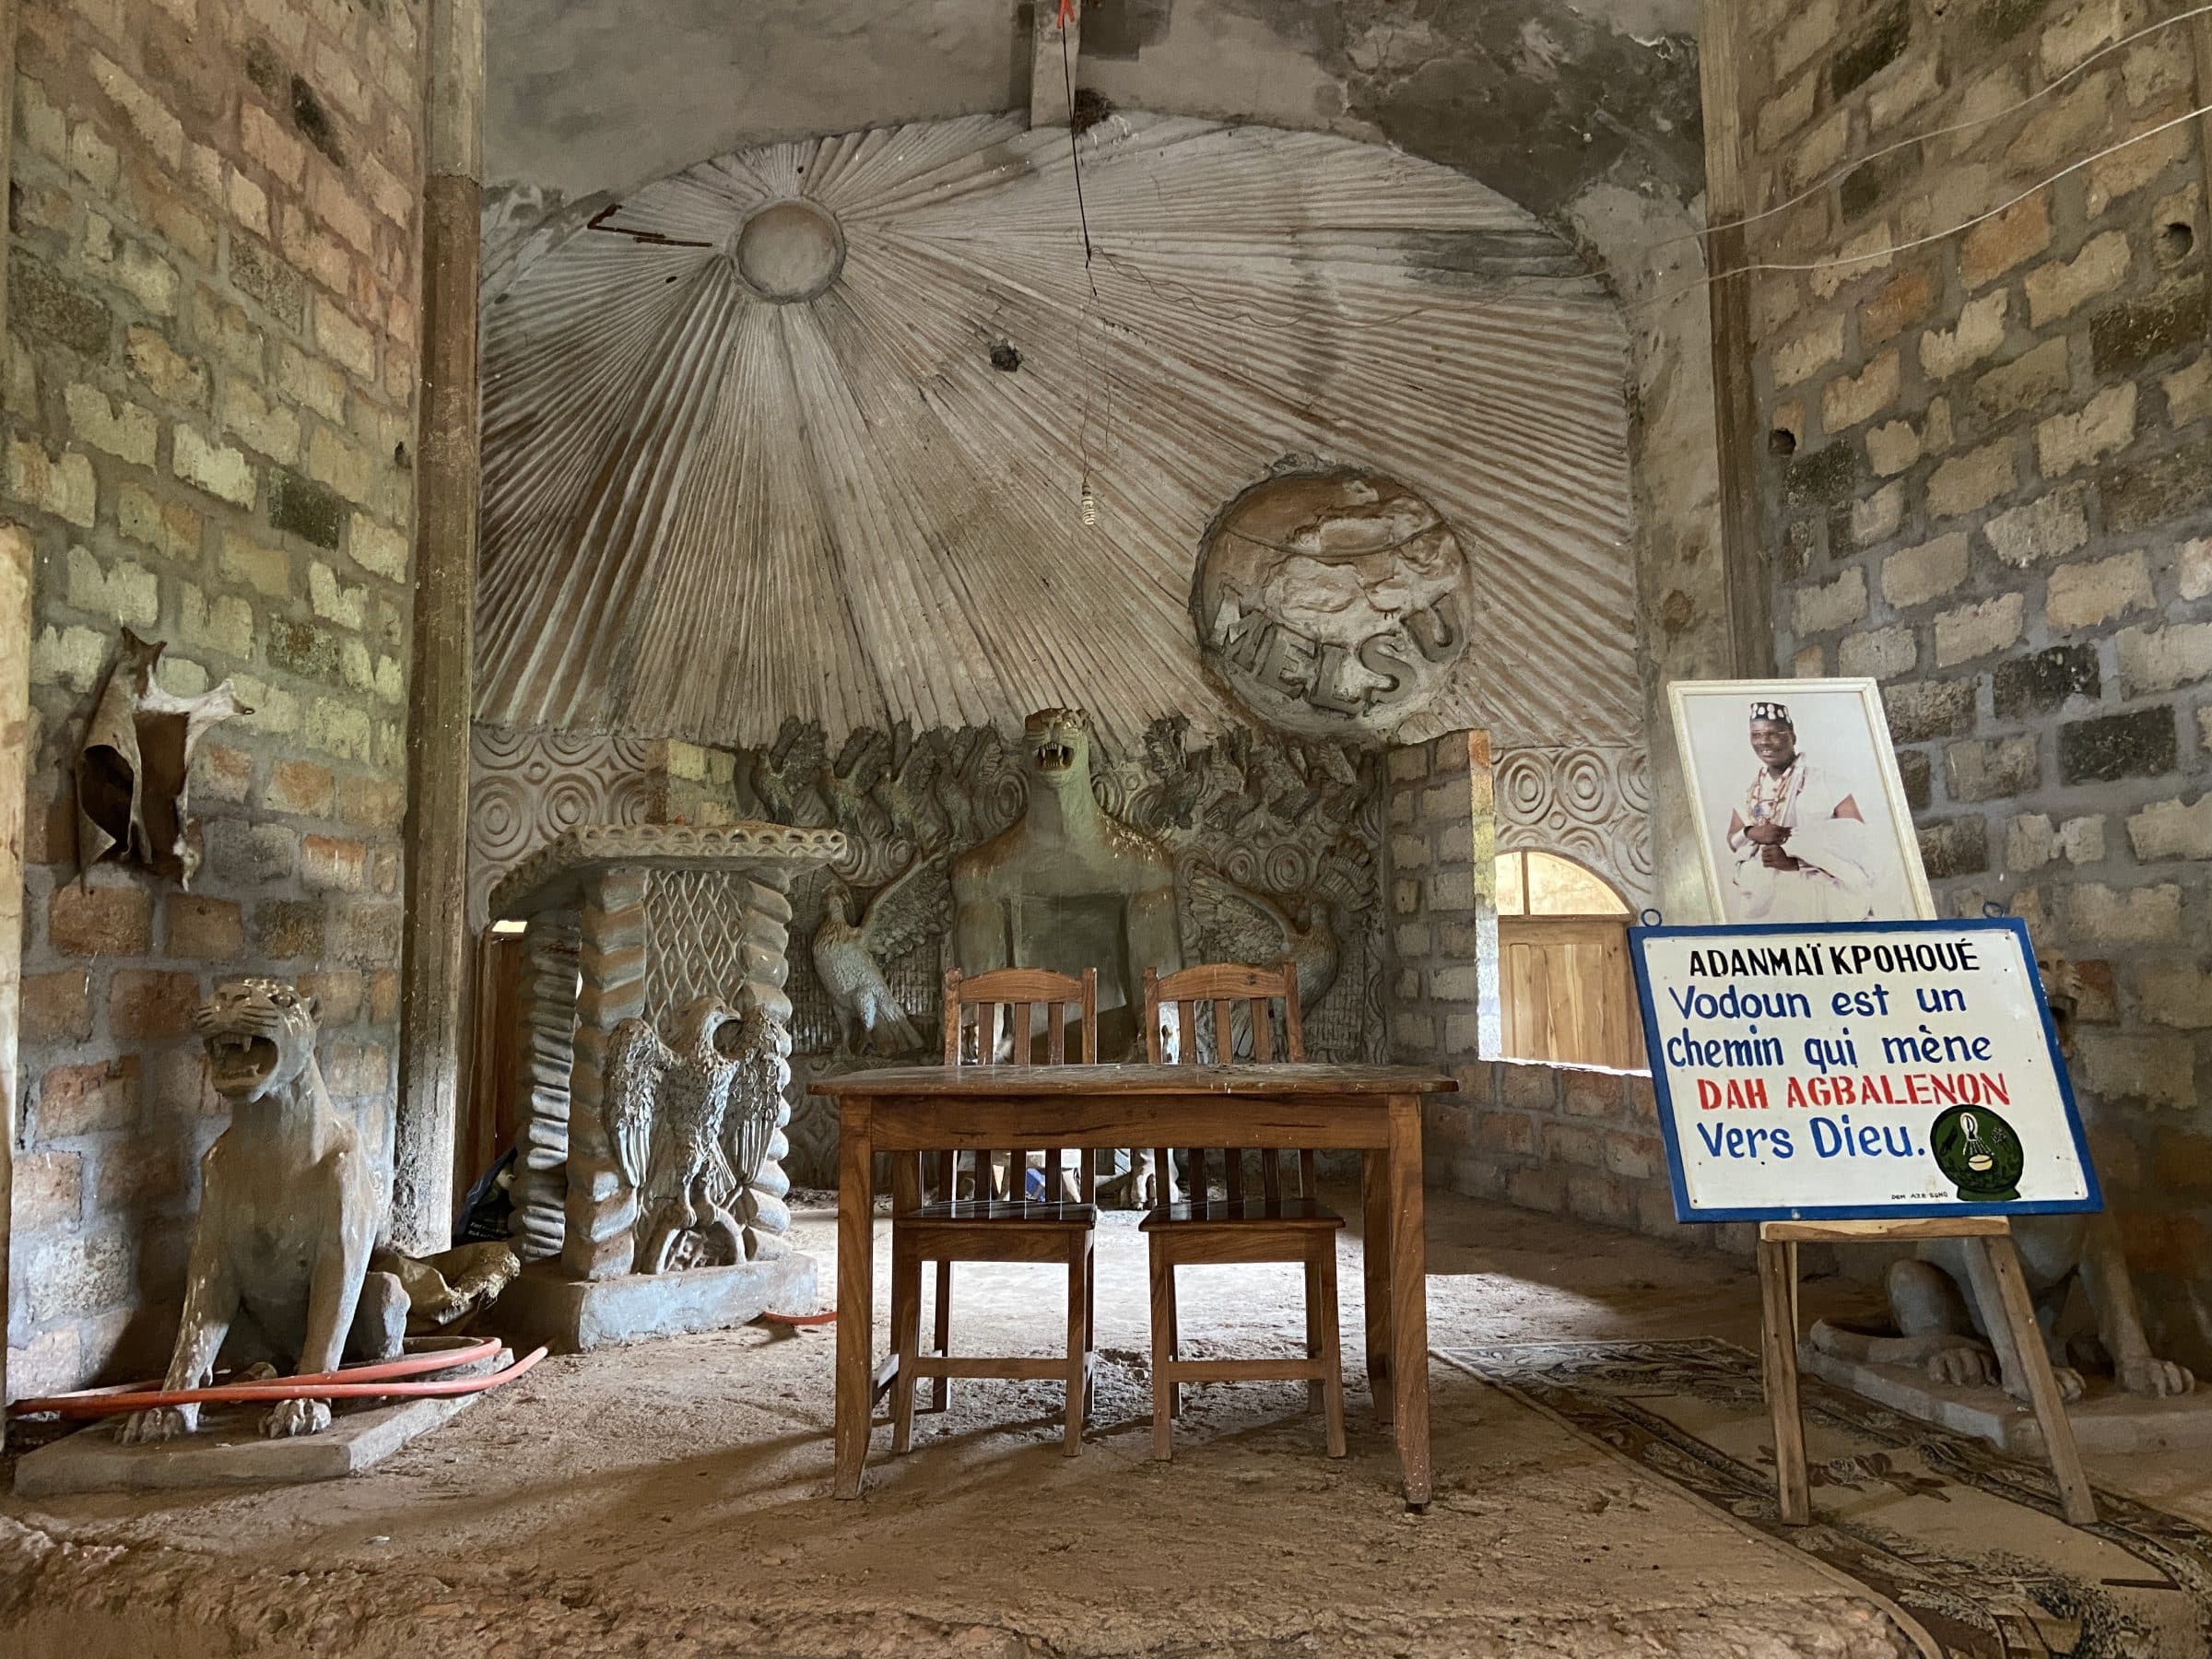 Spreekstoel in Voodoo kerk | Overlanden in Benin